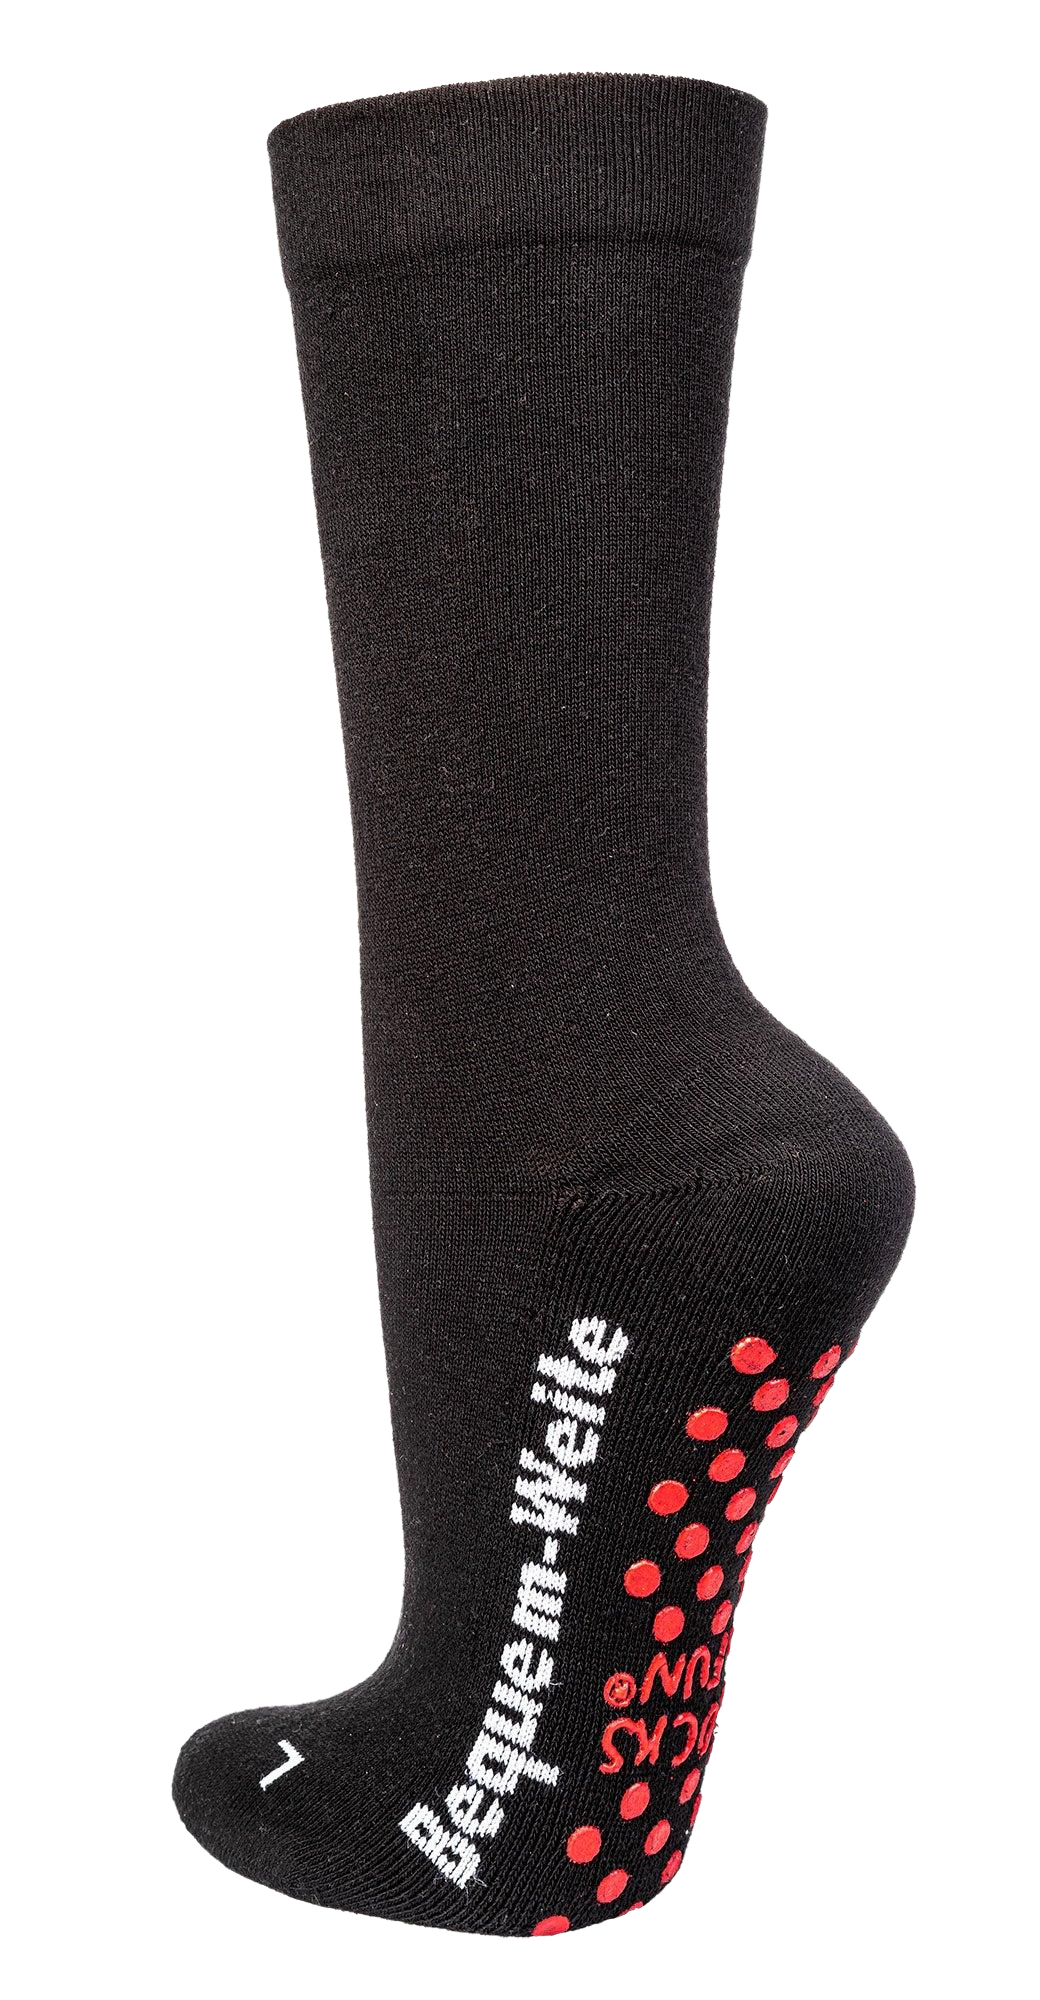 Zeigt die schwarze Socke mit Rotem abs-Druck und mit weißem Logo an der Seite.